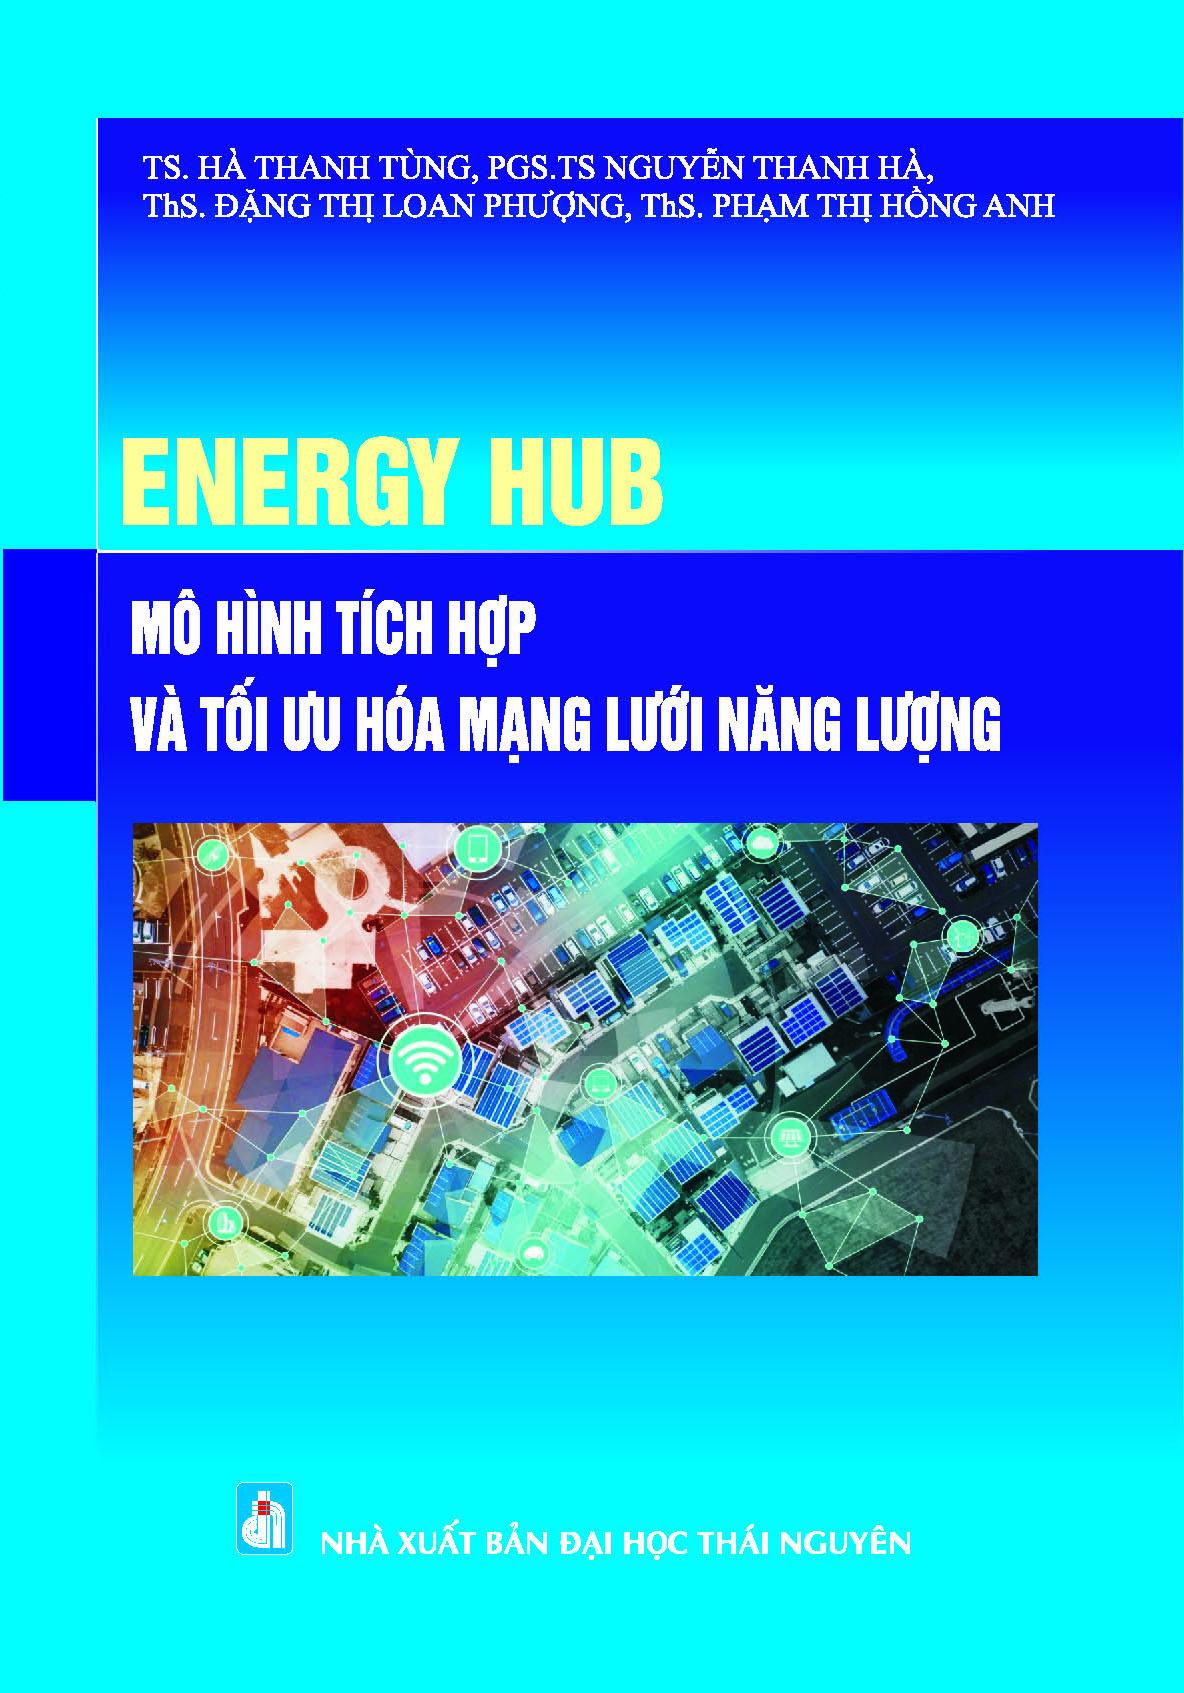 Energy hub - mô hình tích hợp & tối ưu hóa mạng lưới năng lượng